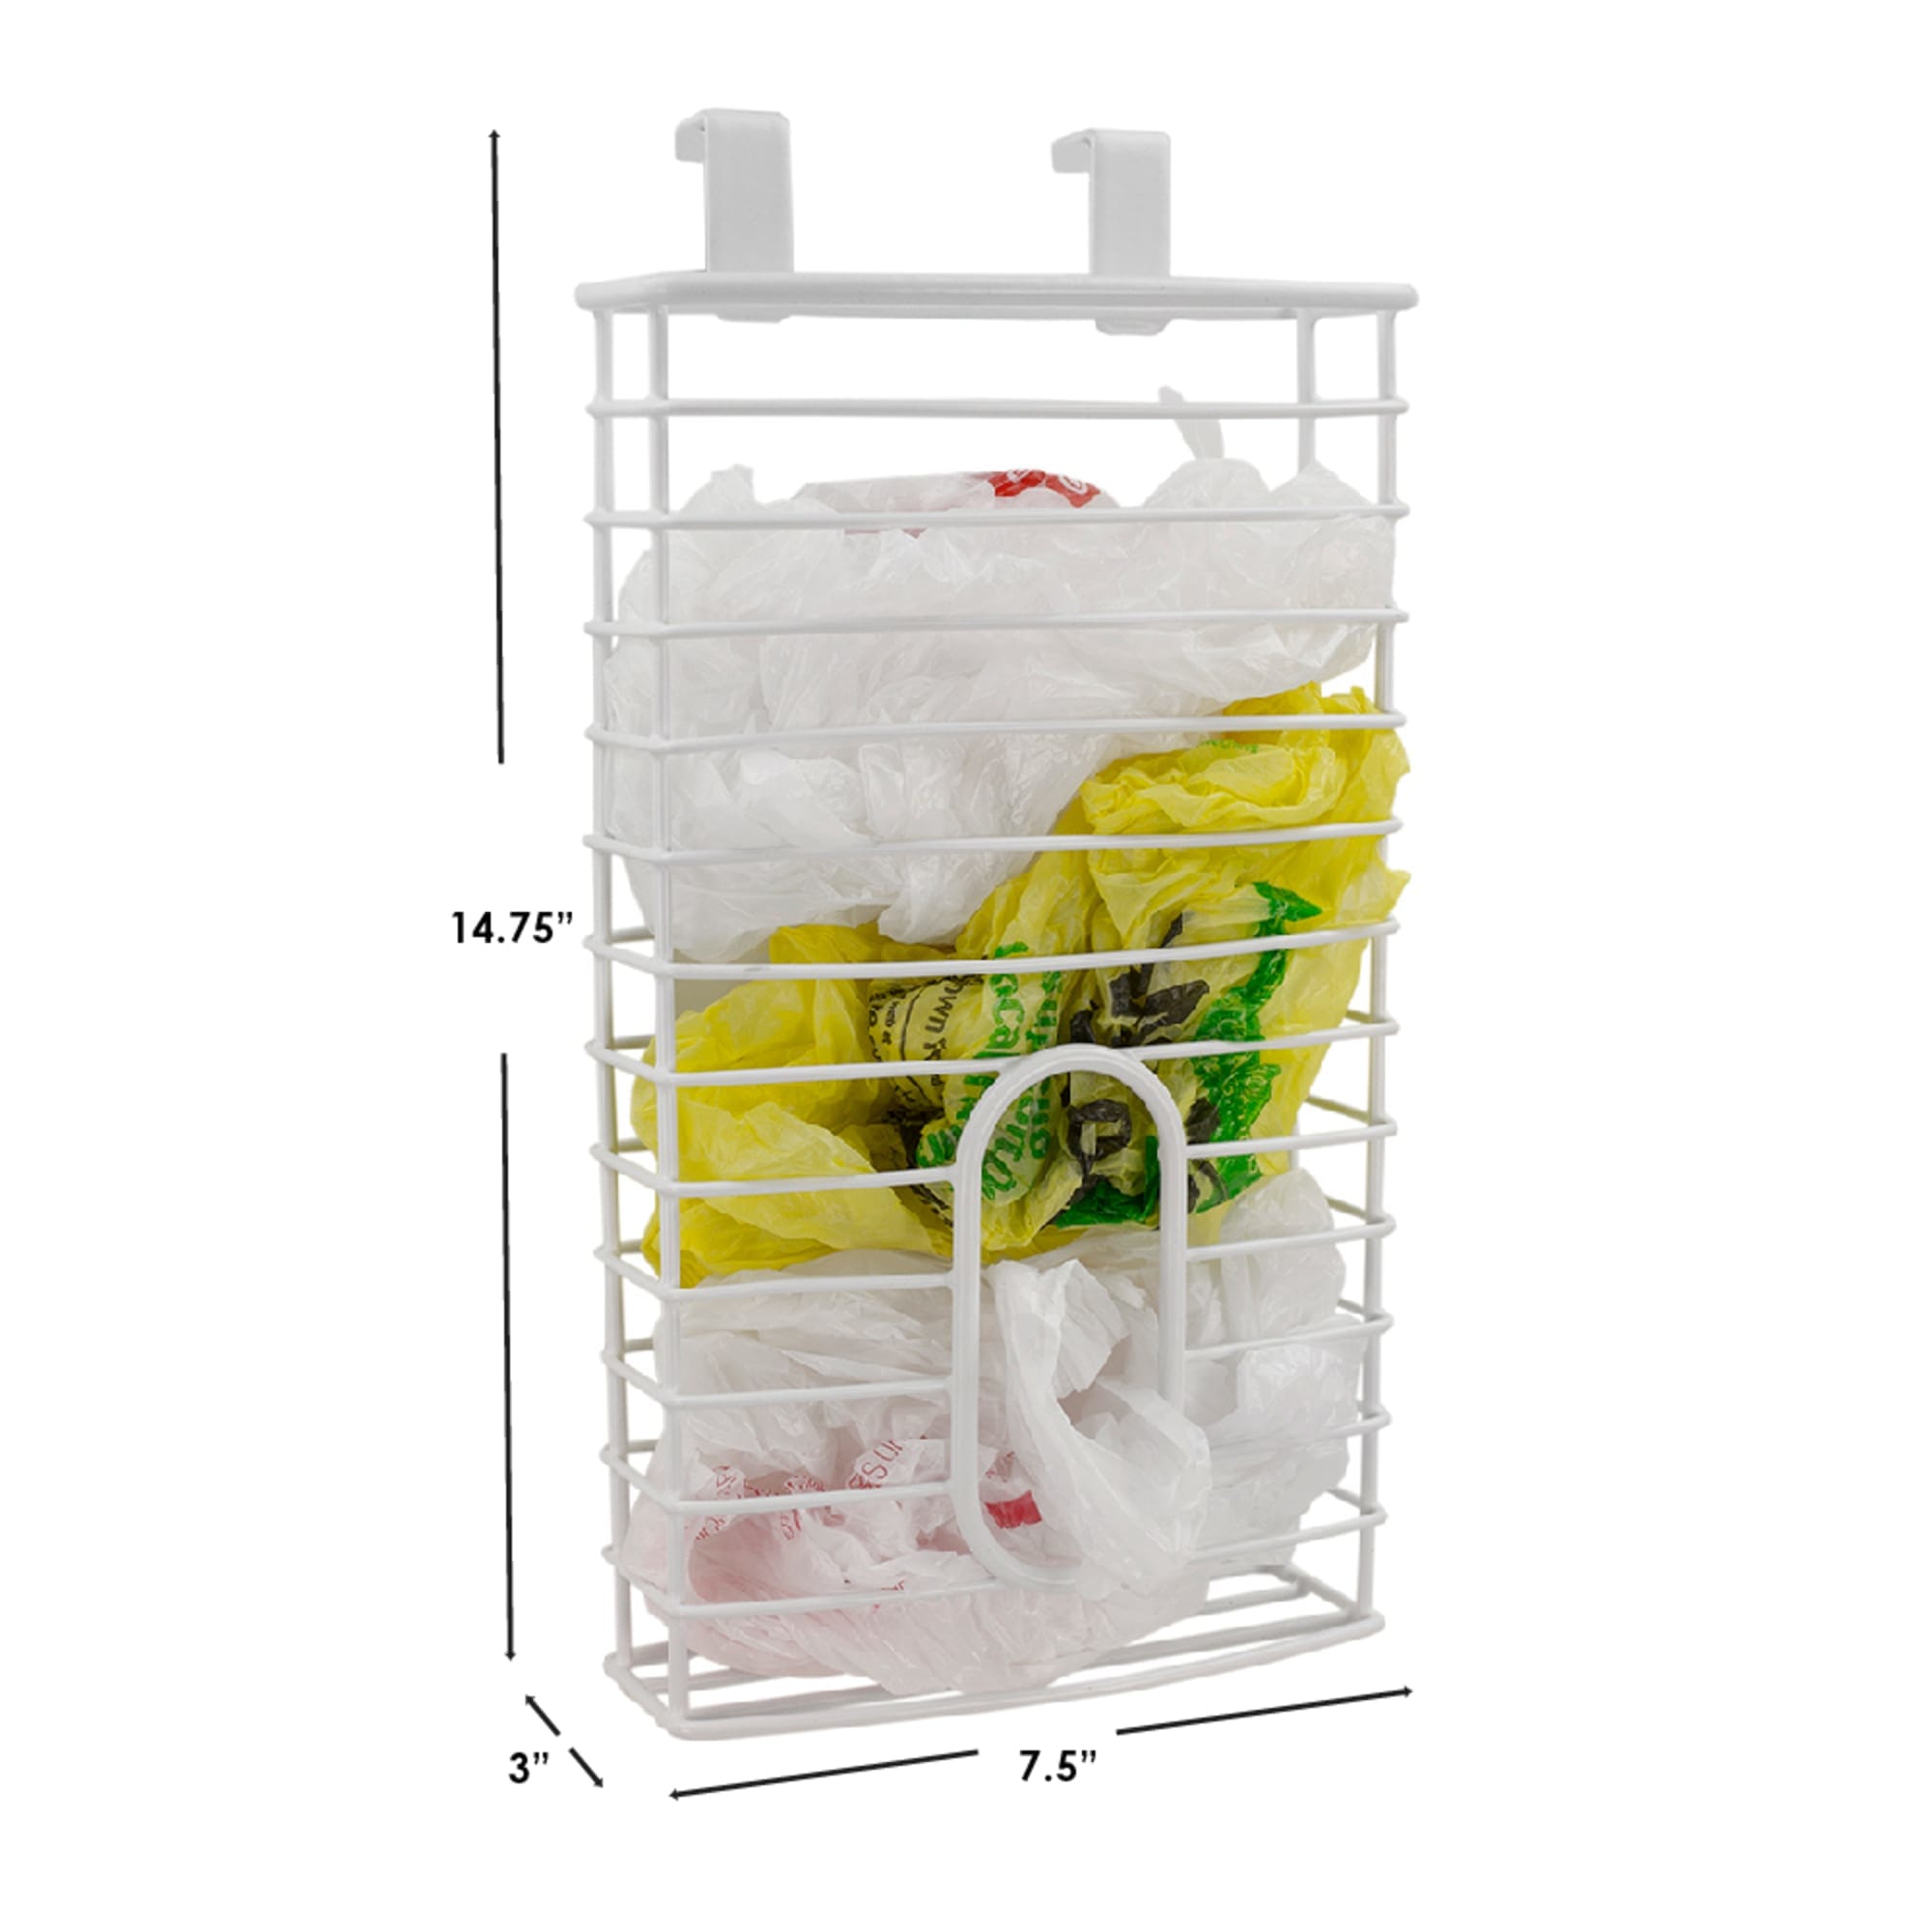 Plastic Bag Holder Grocery Bag Storage Kitchen Bag Storage